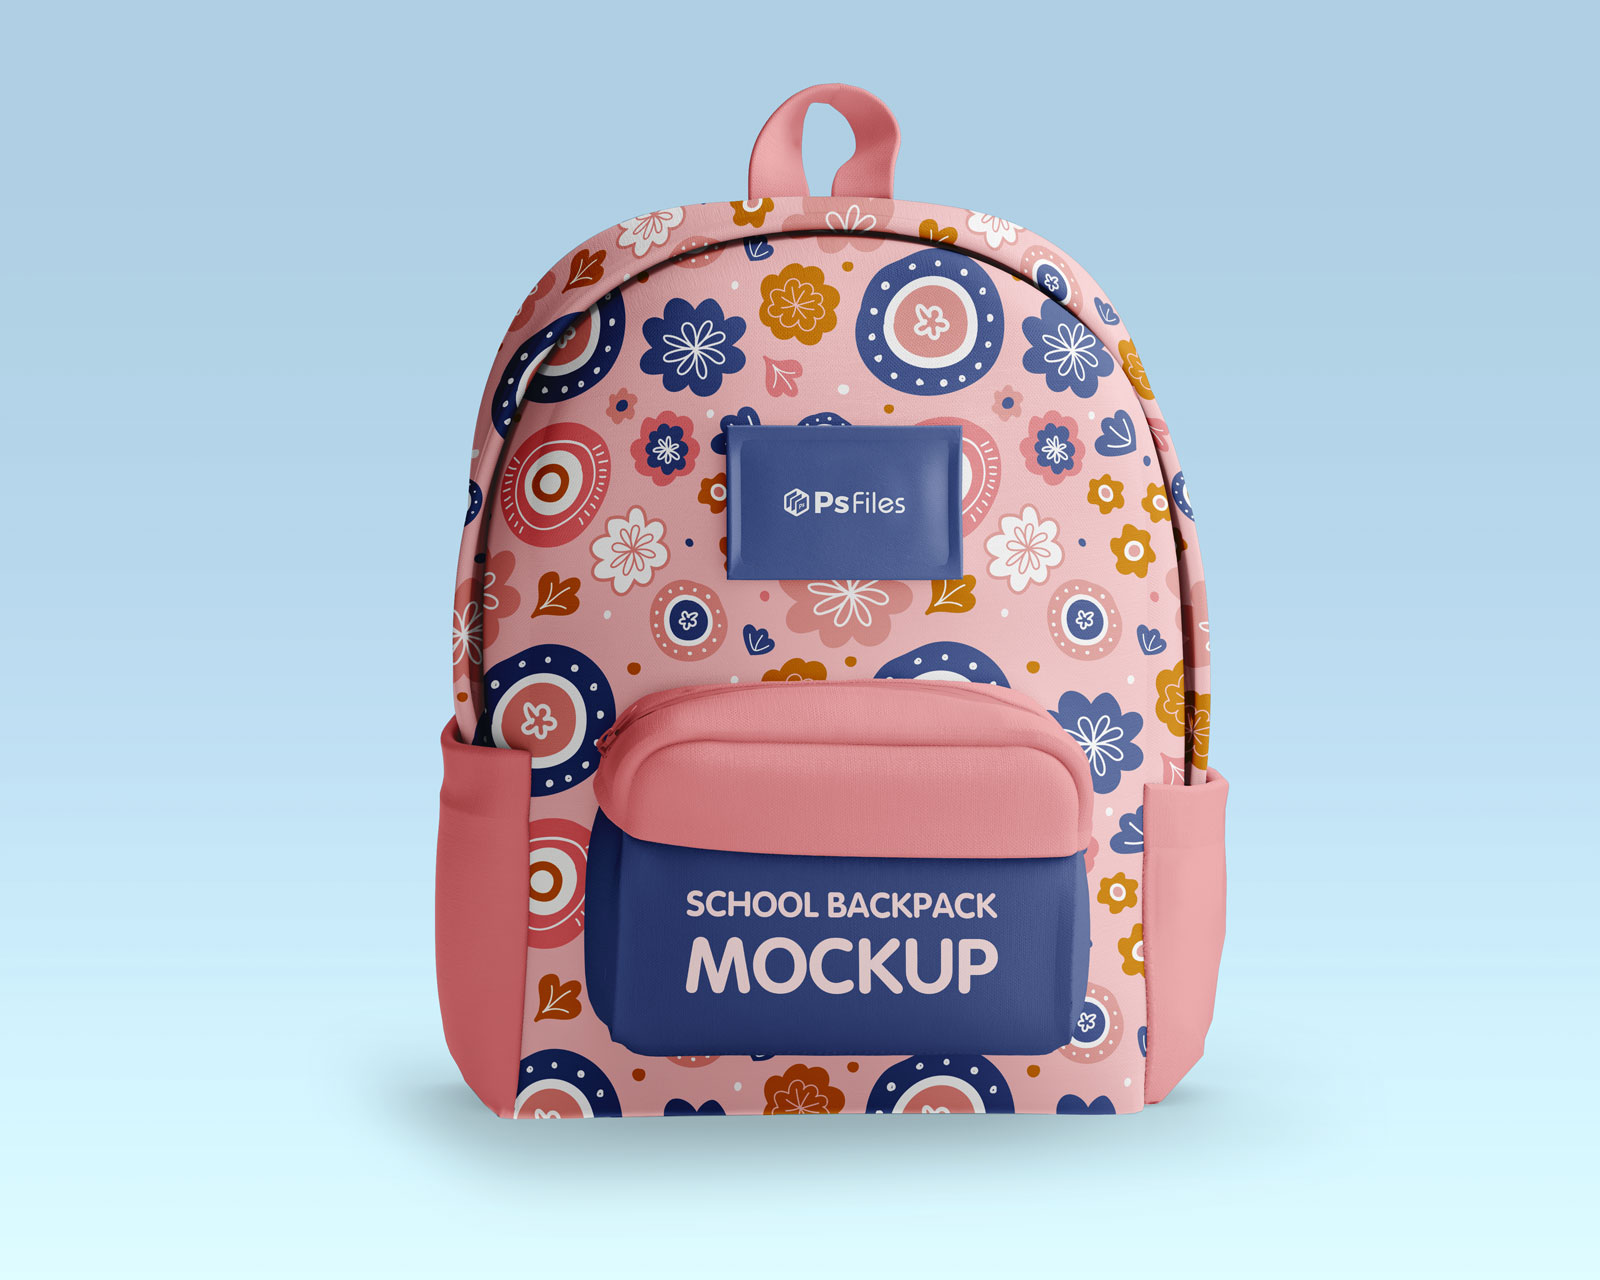 School bag mockup Vectors & Illustrations for Free Download